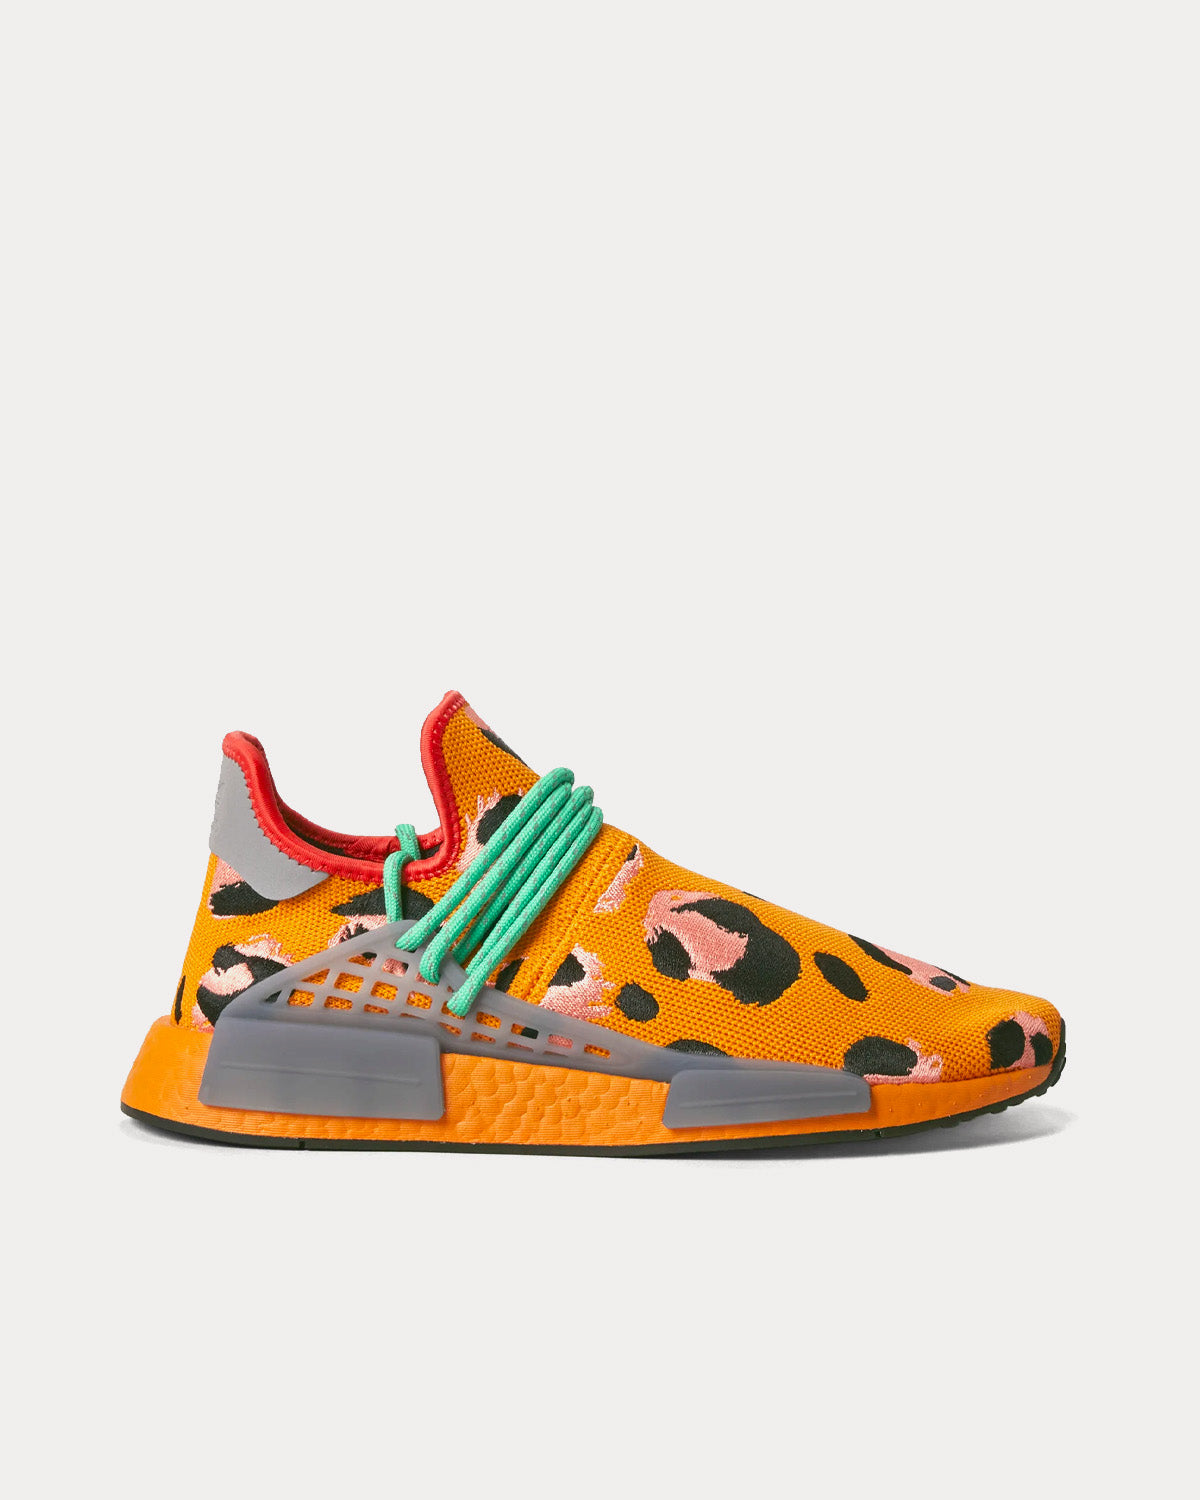 HU NMD Animal Print Focus Orange / Core Black / Screaming Green Low Top  Sneakers